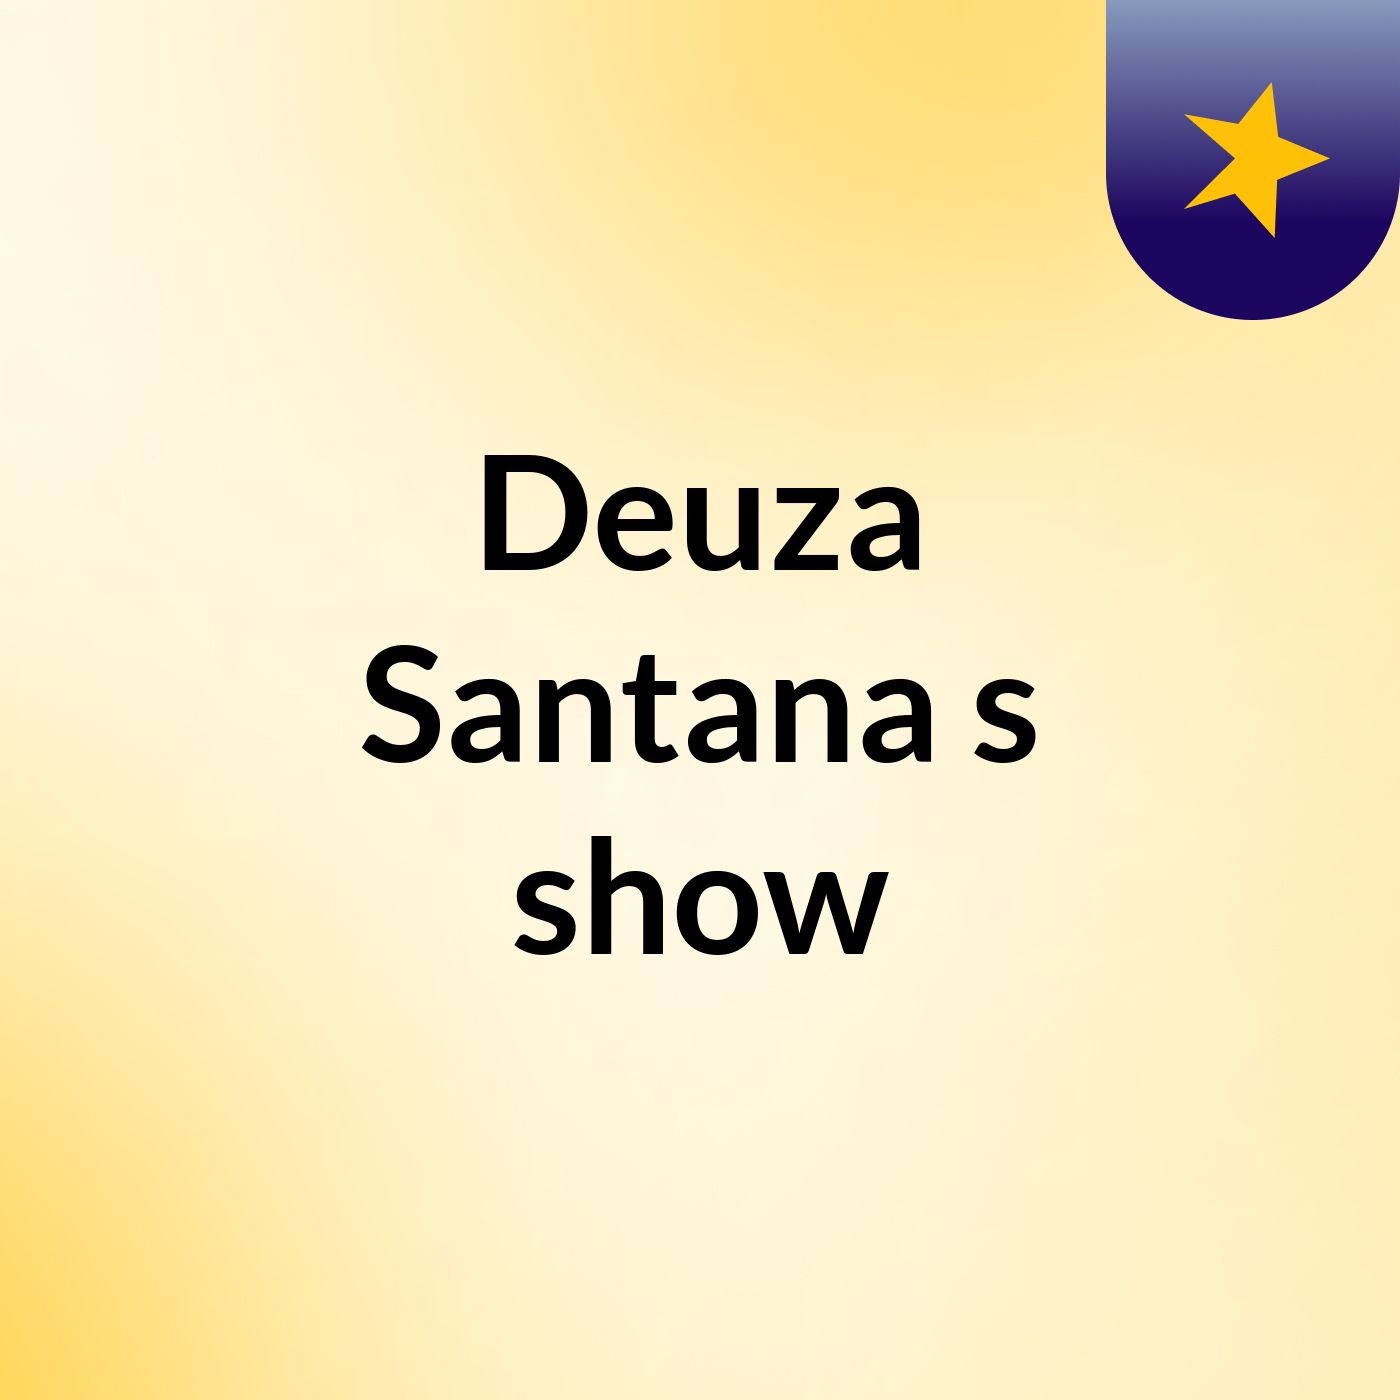 Deuza Santana's show